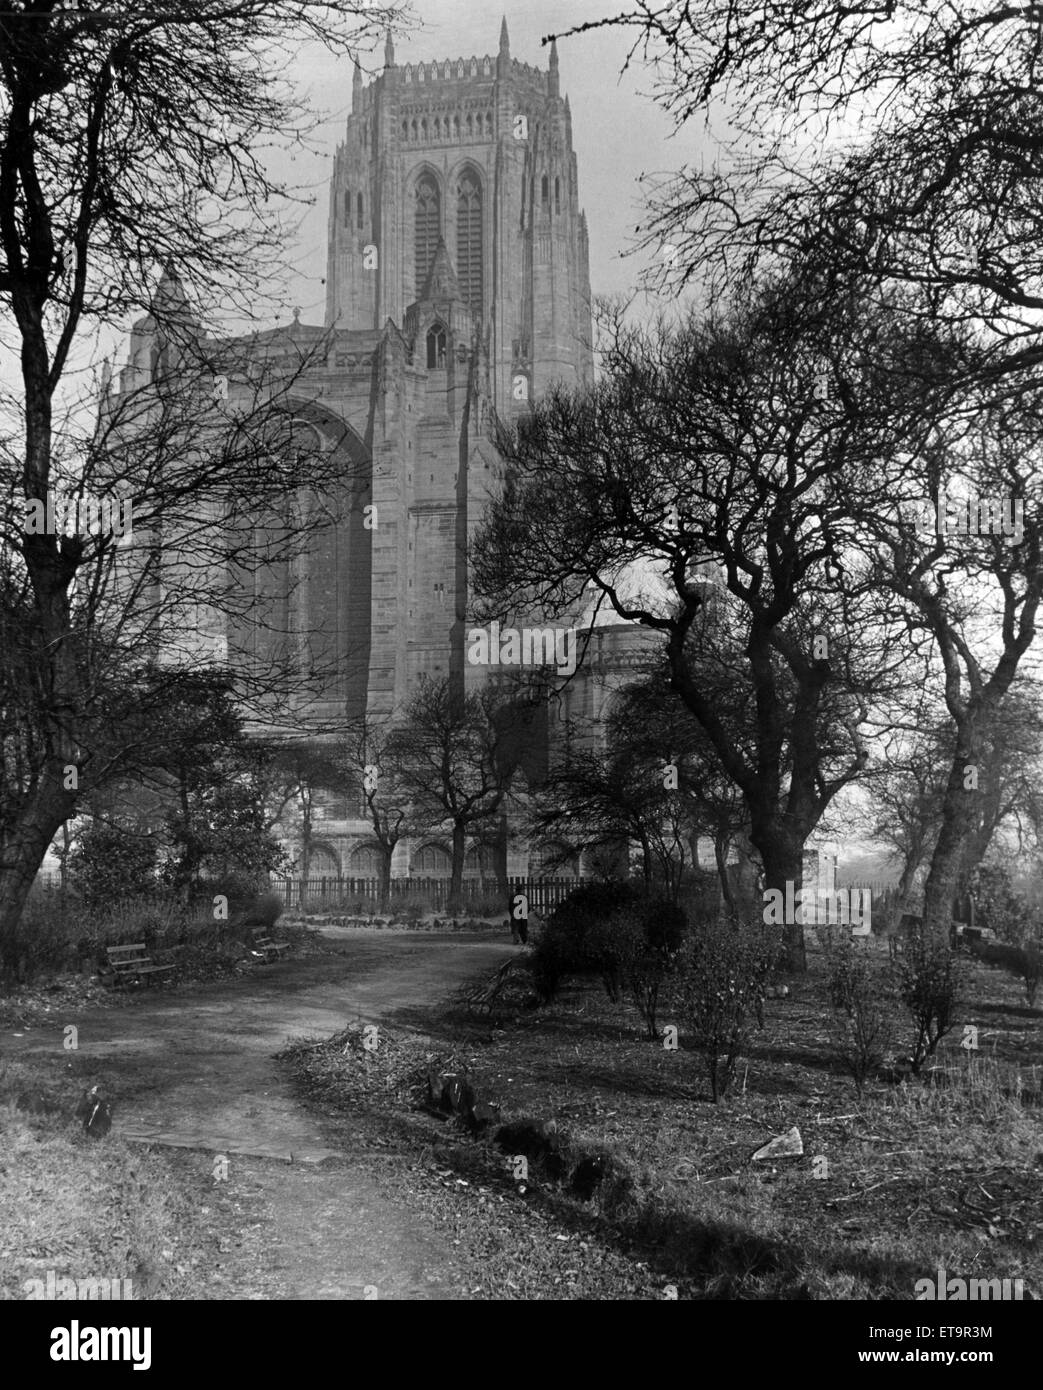 Liverpool Kathedrale, die Kirche England Kathedrale der Diözese von Liverpool, auf Str. Jamess Mount in Liverpool gebaut und ist der Sitz des Bischofs von Liverpool, 1978 fertiggestellt. Ca. März 1955. Stockfoto